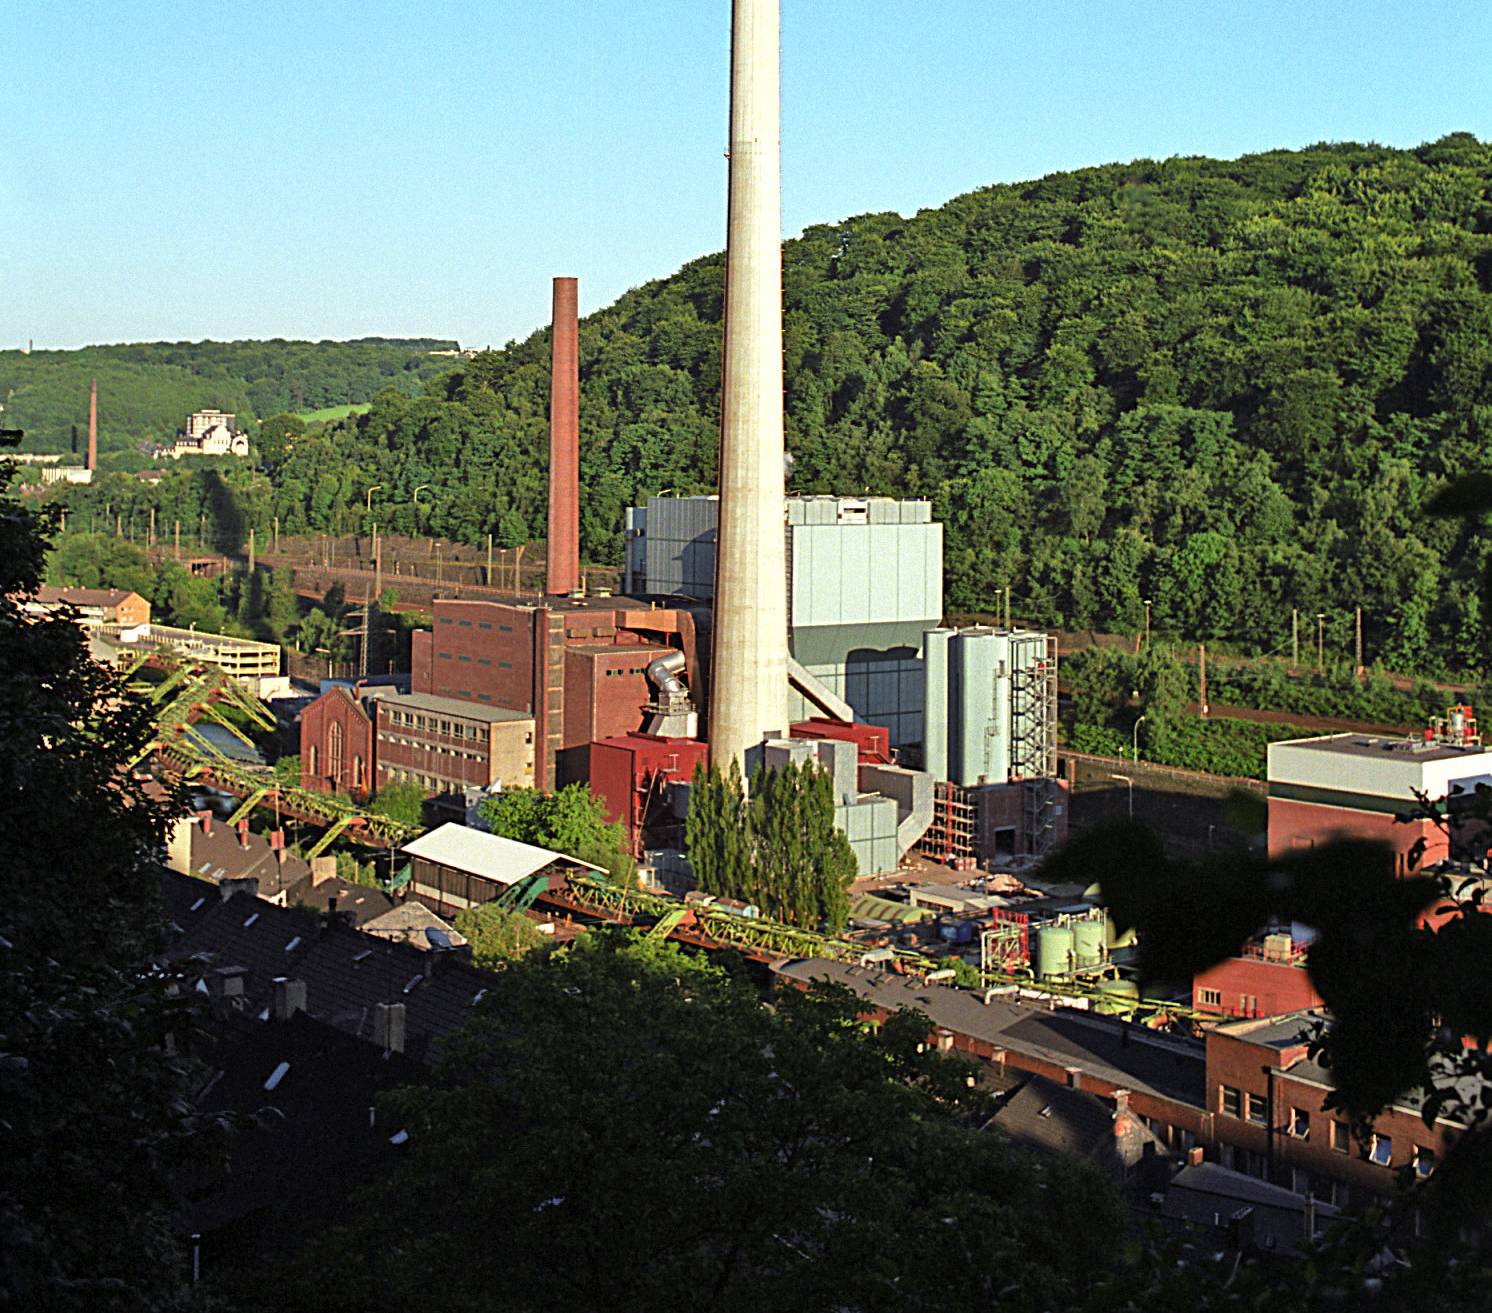  Das Heizkraftwerk Elberfeld erhielt 1981 seinen markanten Schornstein, mit 198 Metern das höchste Bauwerk Wuppertals. 